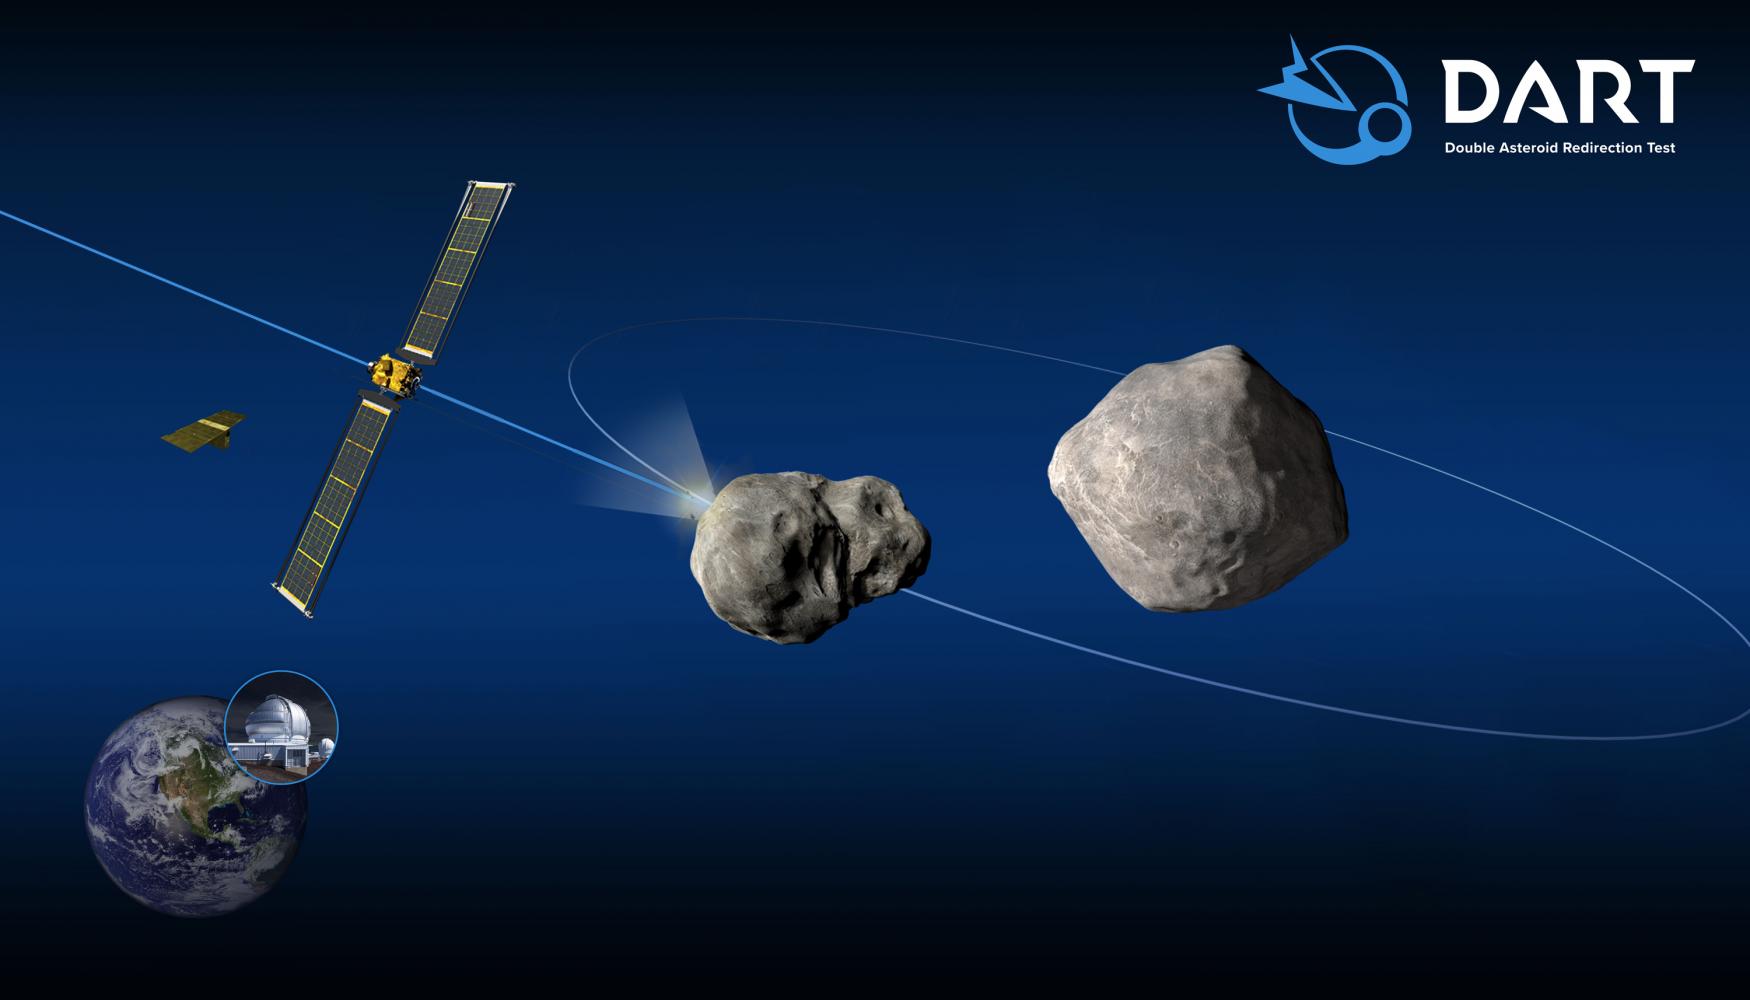 Grafische Darstellung der Mission "Dart" (Double Asteroid Redirection Test)